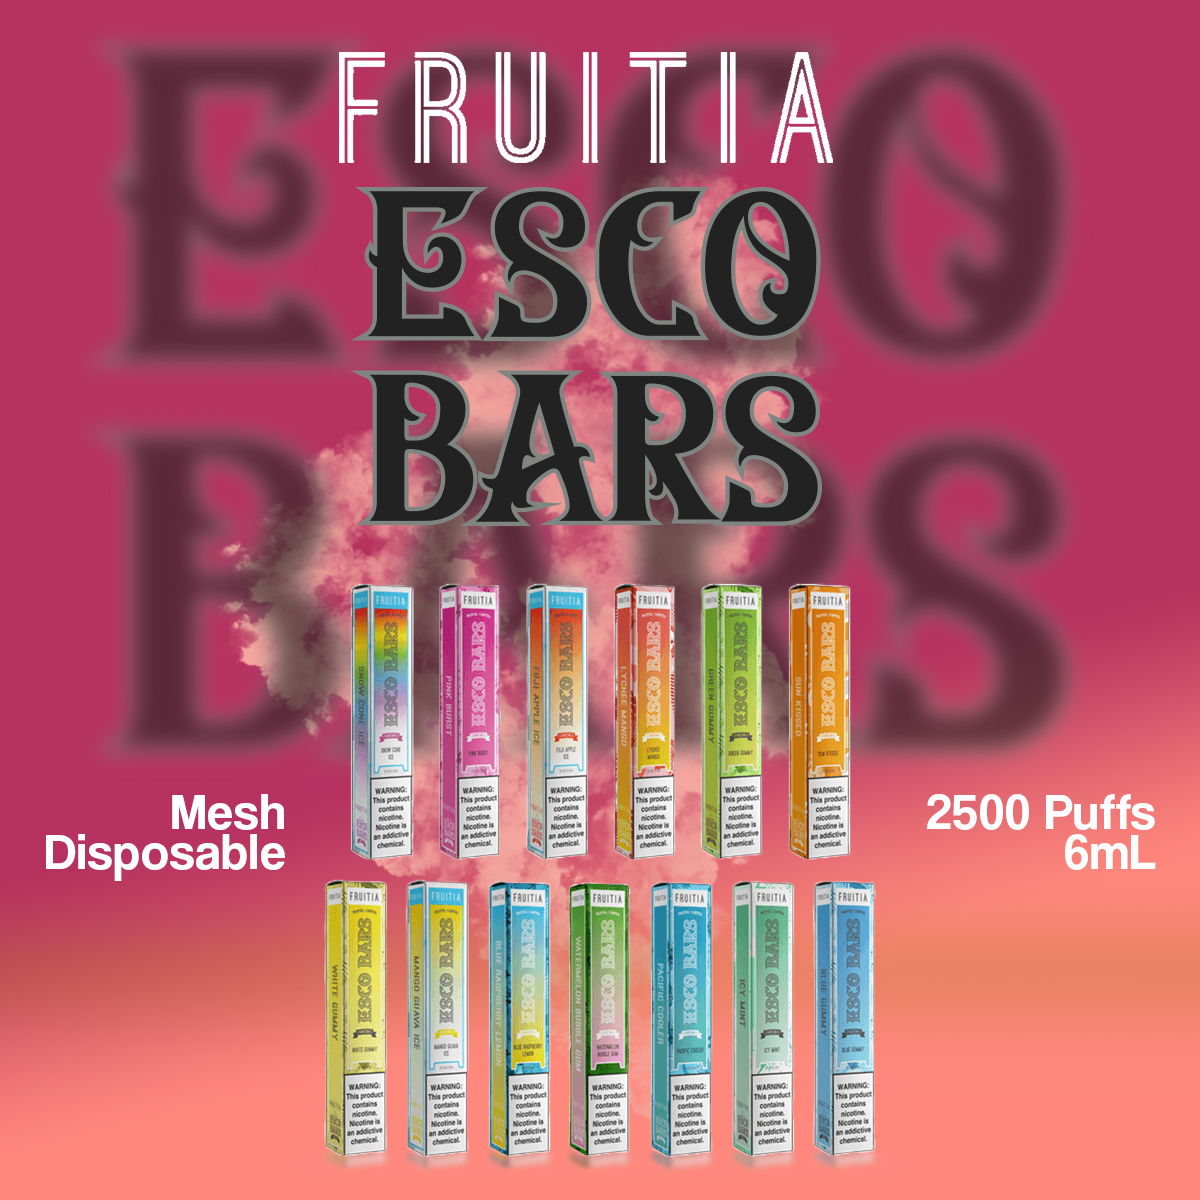 Fruitia Esco Bars Mesh Disposable | 2500 Puffs | 6mL